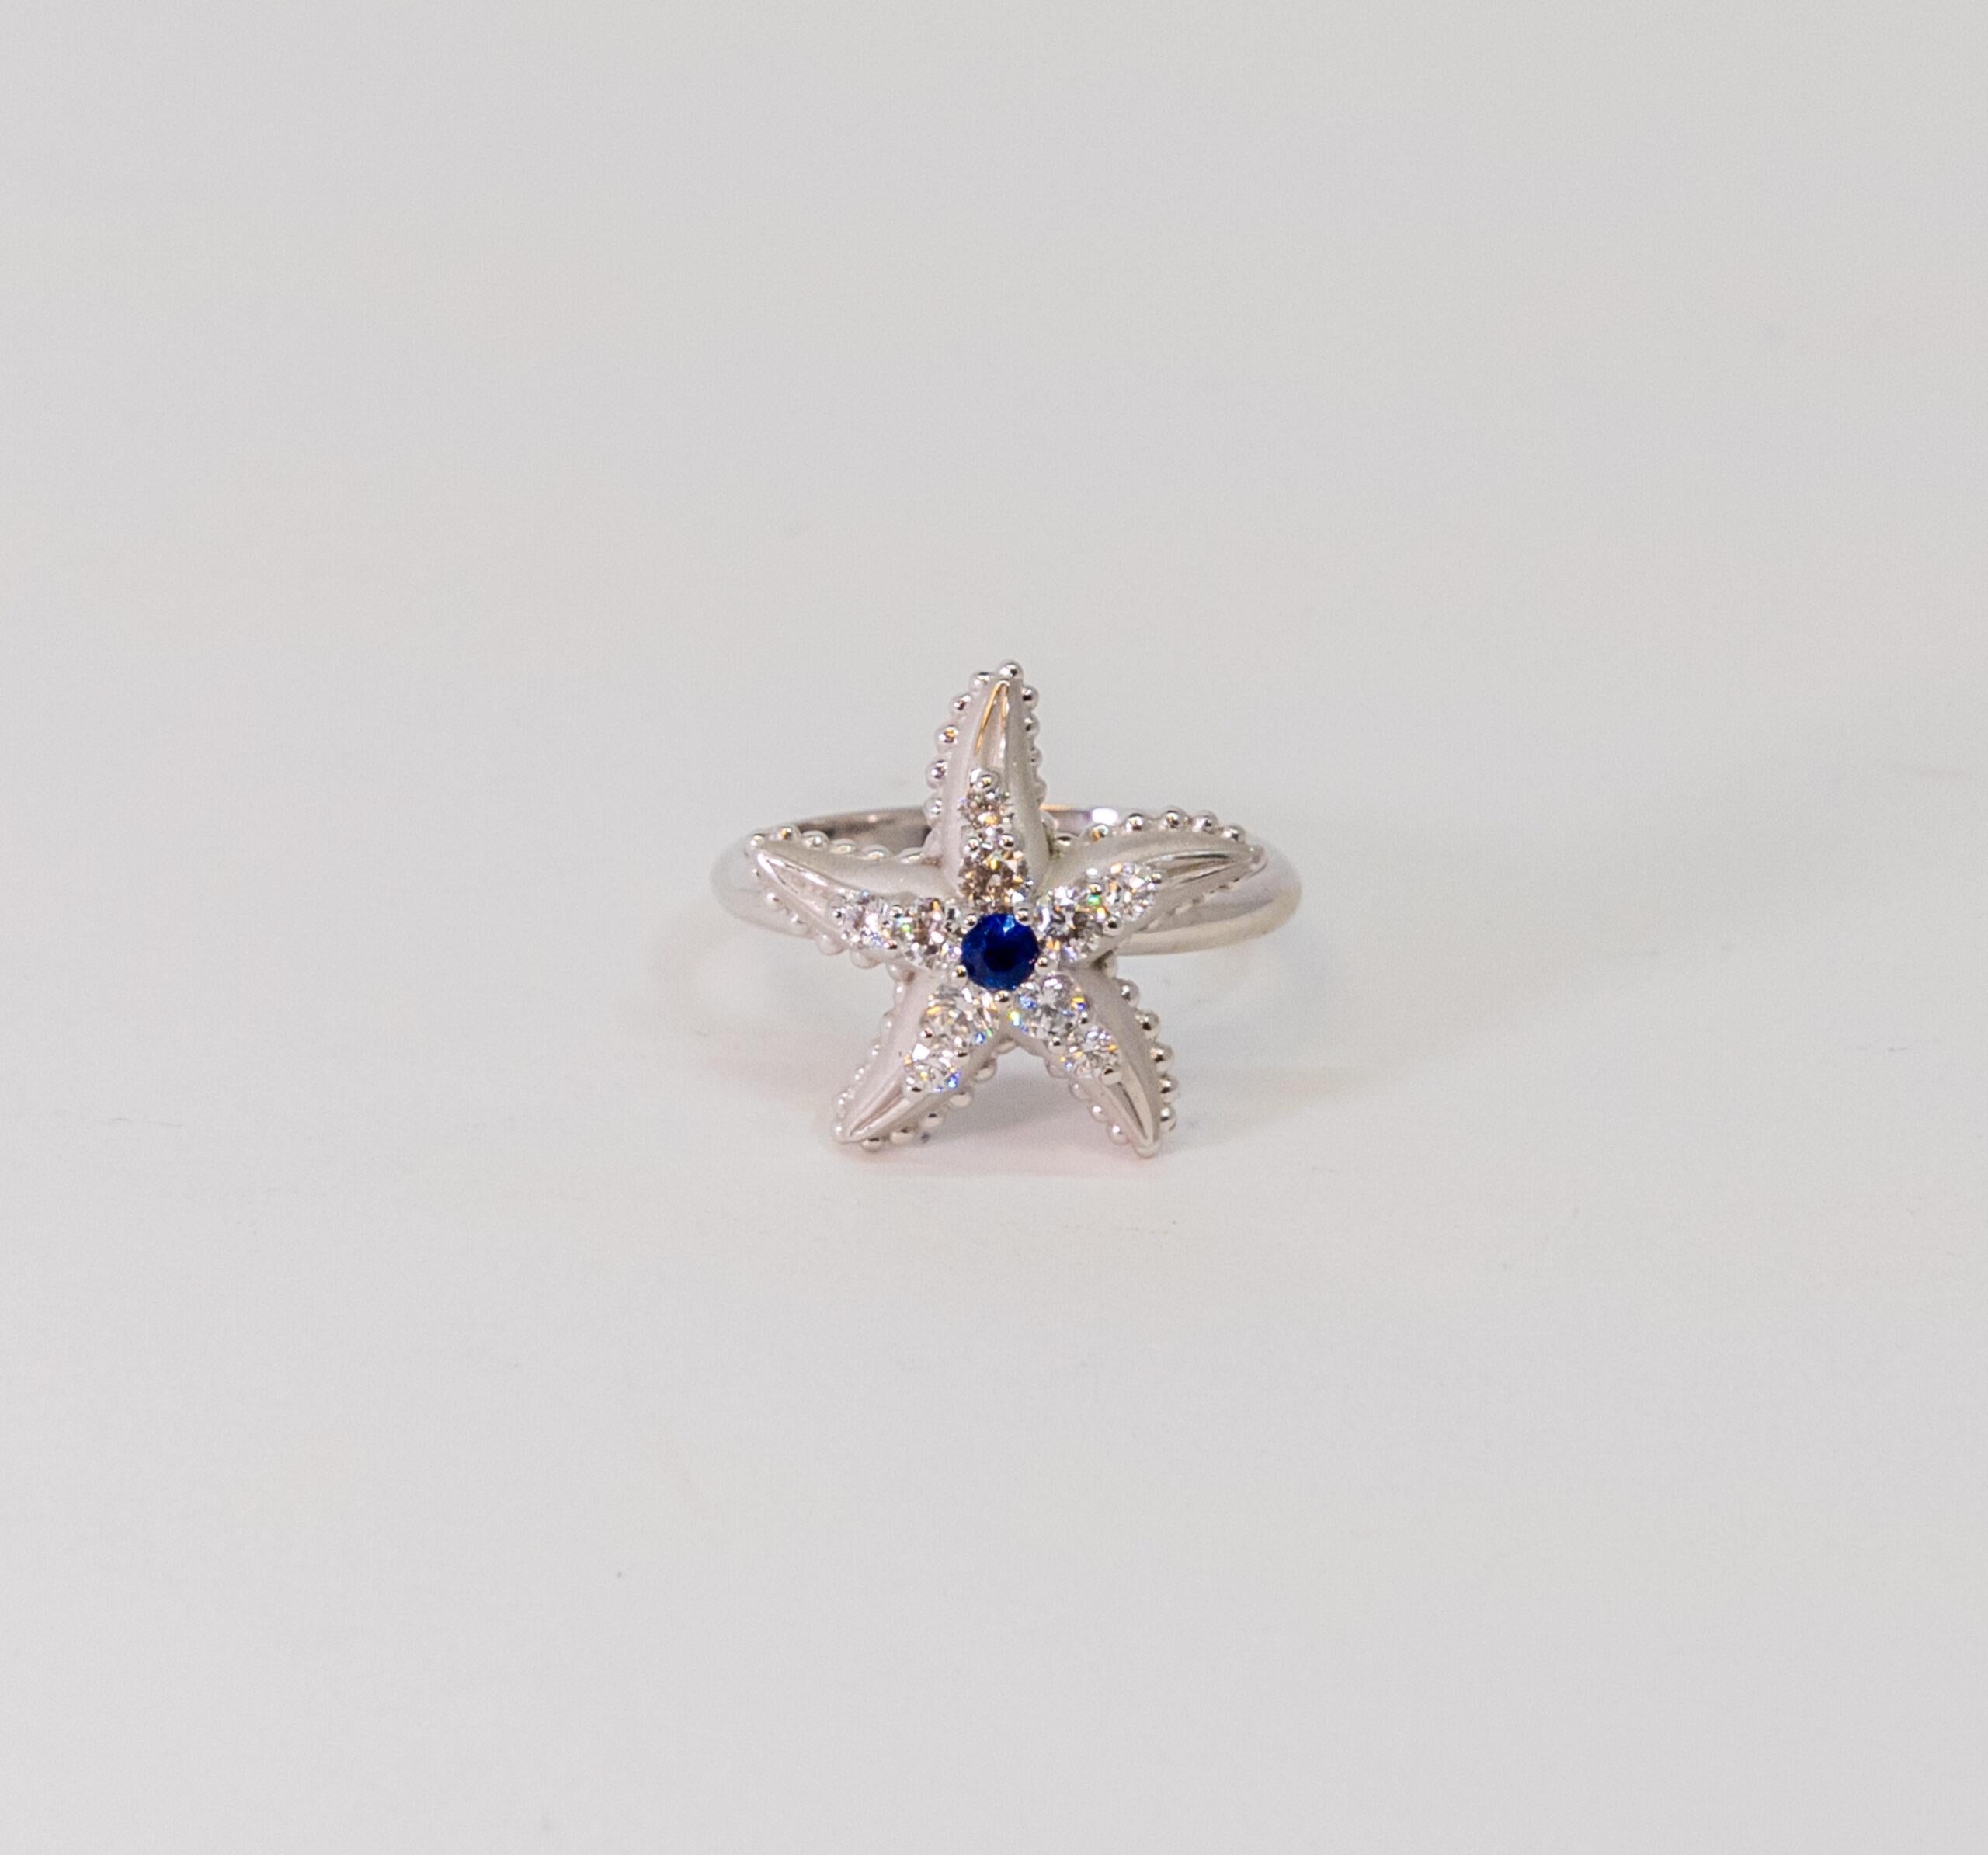 Carrara Y Carrara Starfish 18k White Gold Diamonds and Blue Sapphire Ring In New Condition For Sale In North Miami Beach, FL